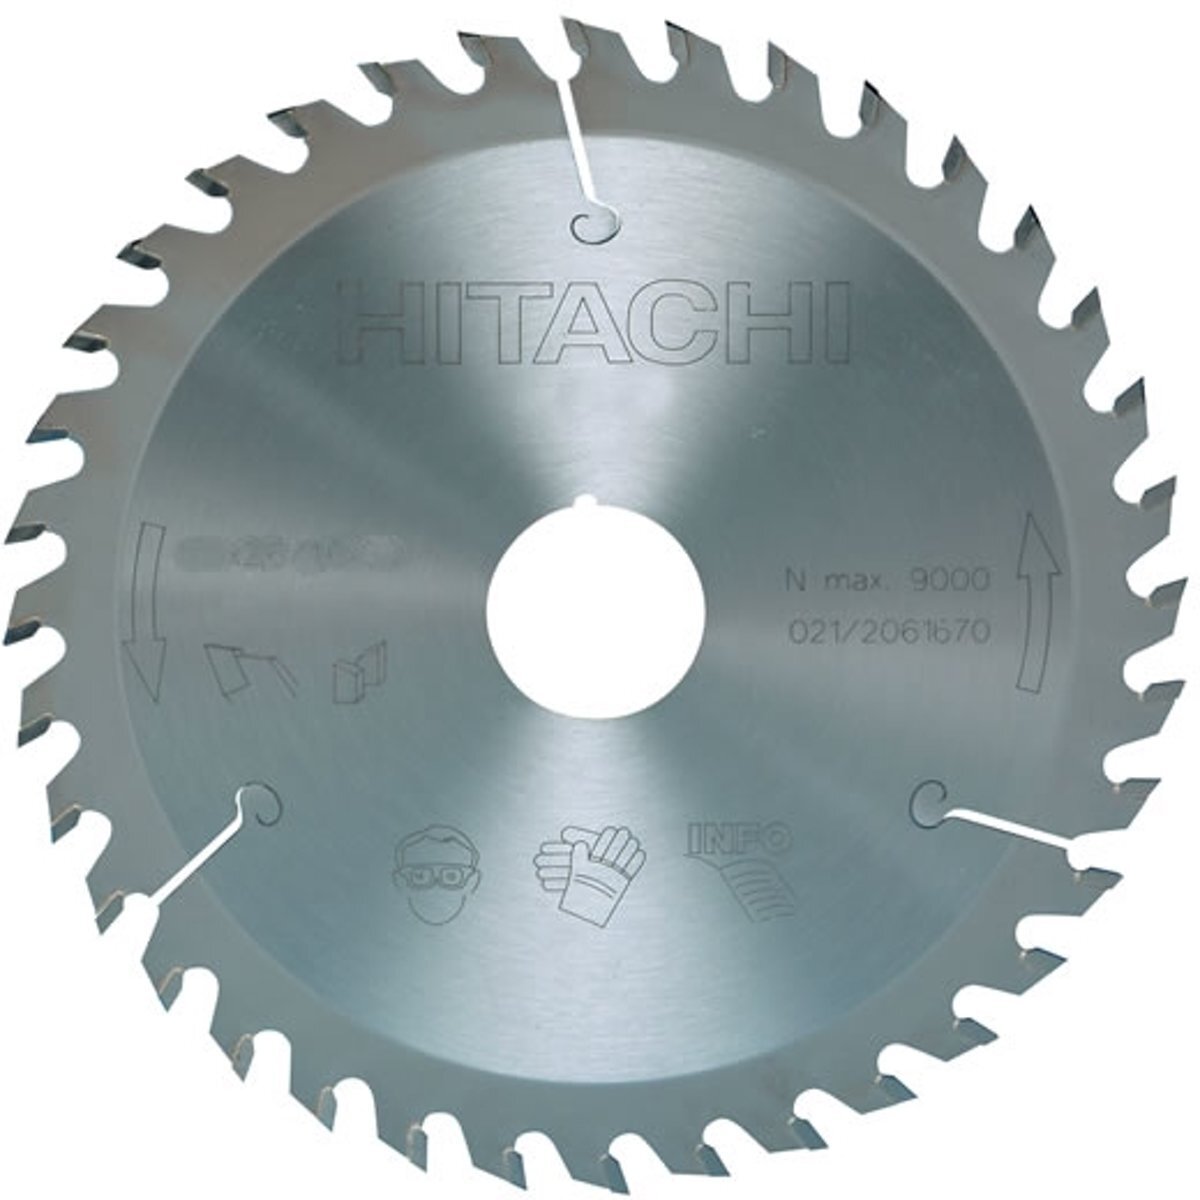 Hitachi Cirkelzaagblad voor hout 235x30mm 24t752455